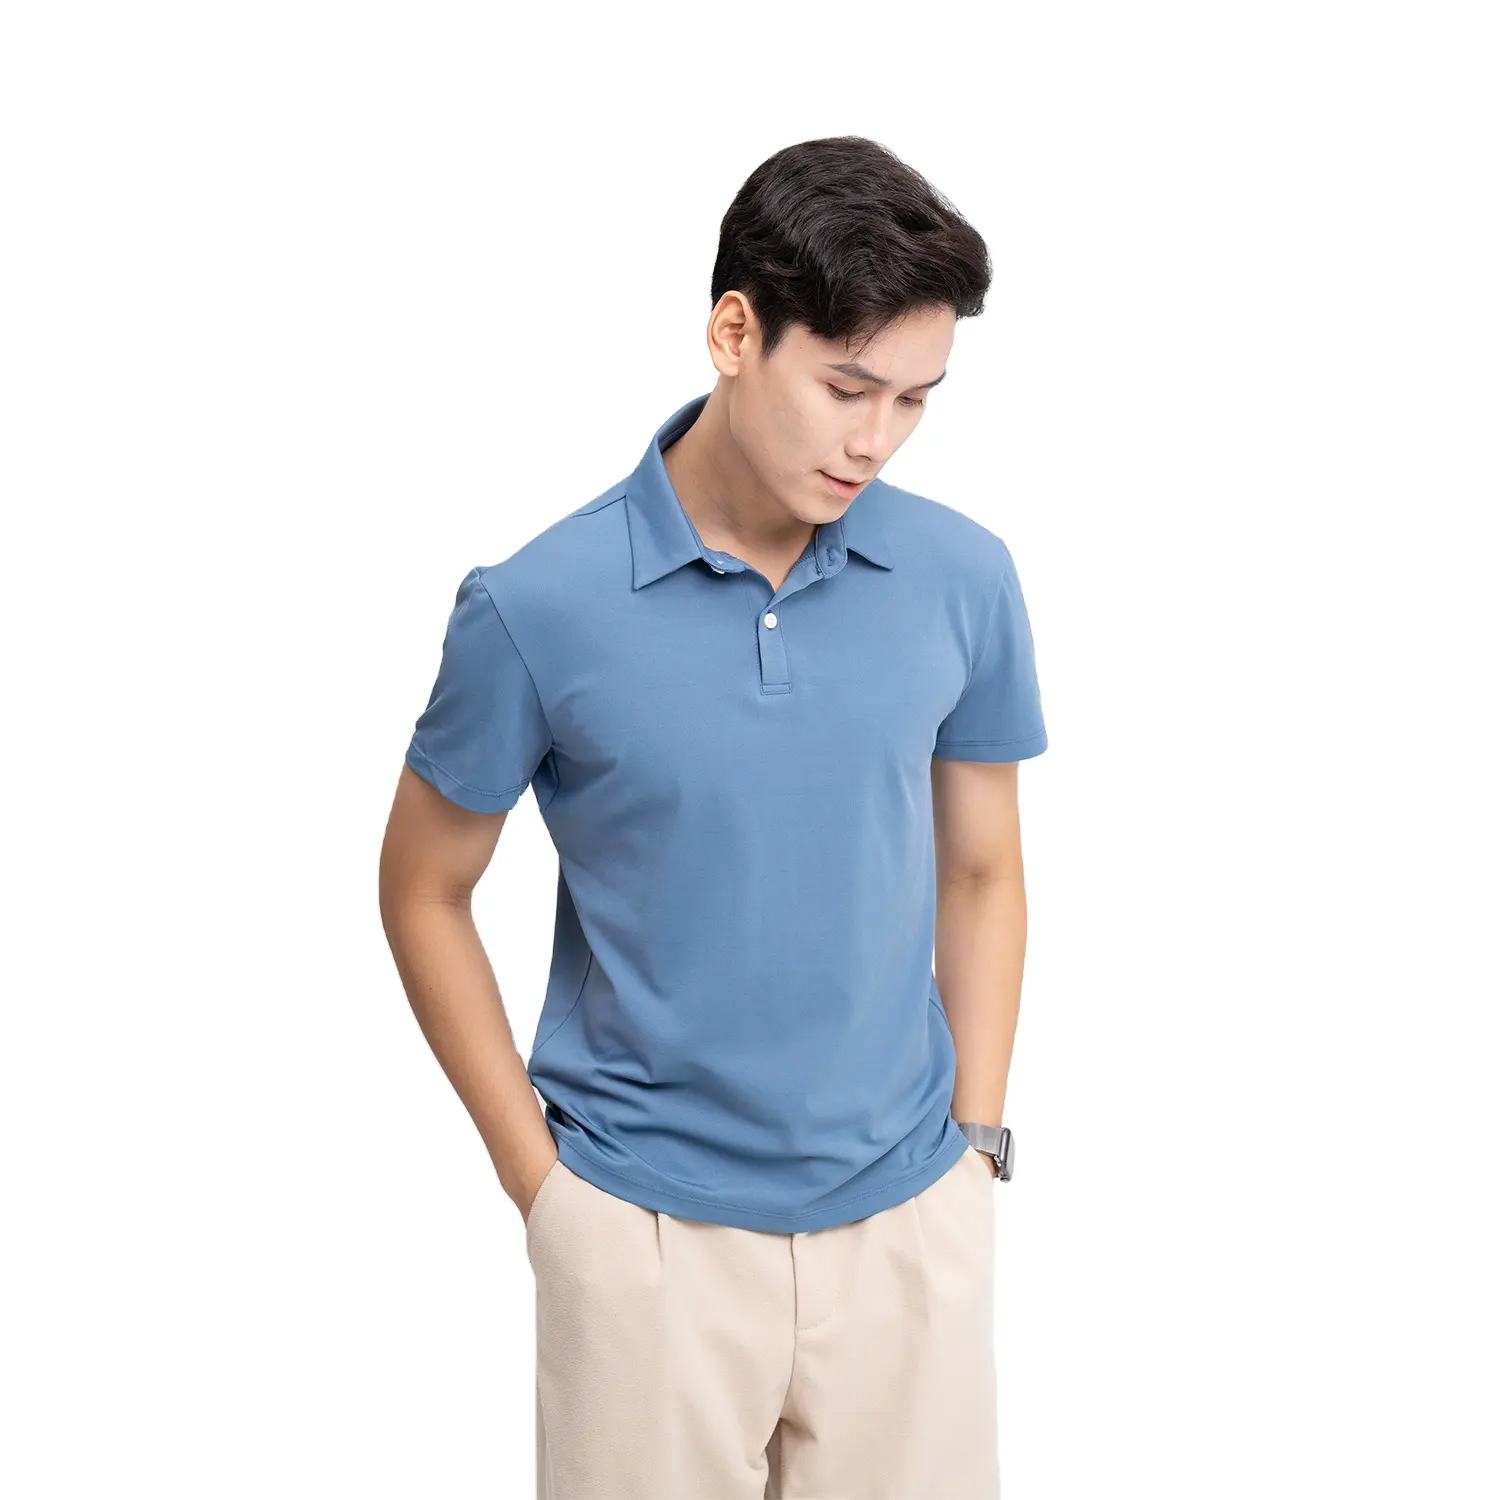 Новая модель, мужские рубашки поло, Официальная футболка с трикотажным полотном против морщин, дышащая 100% хлопковая смесь полиэстера